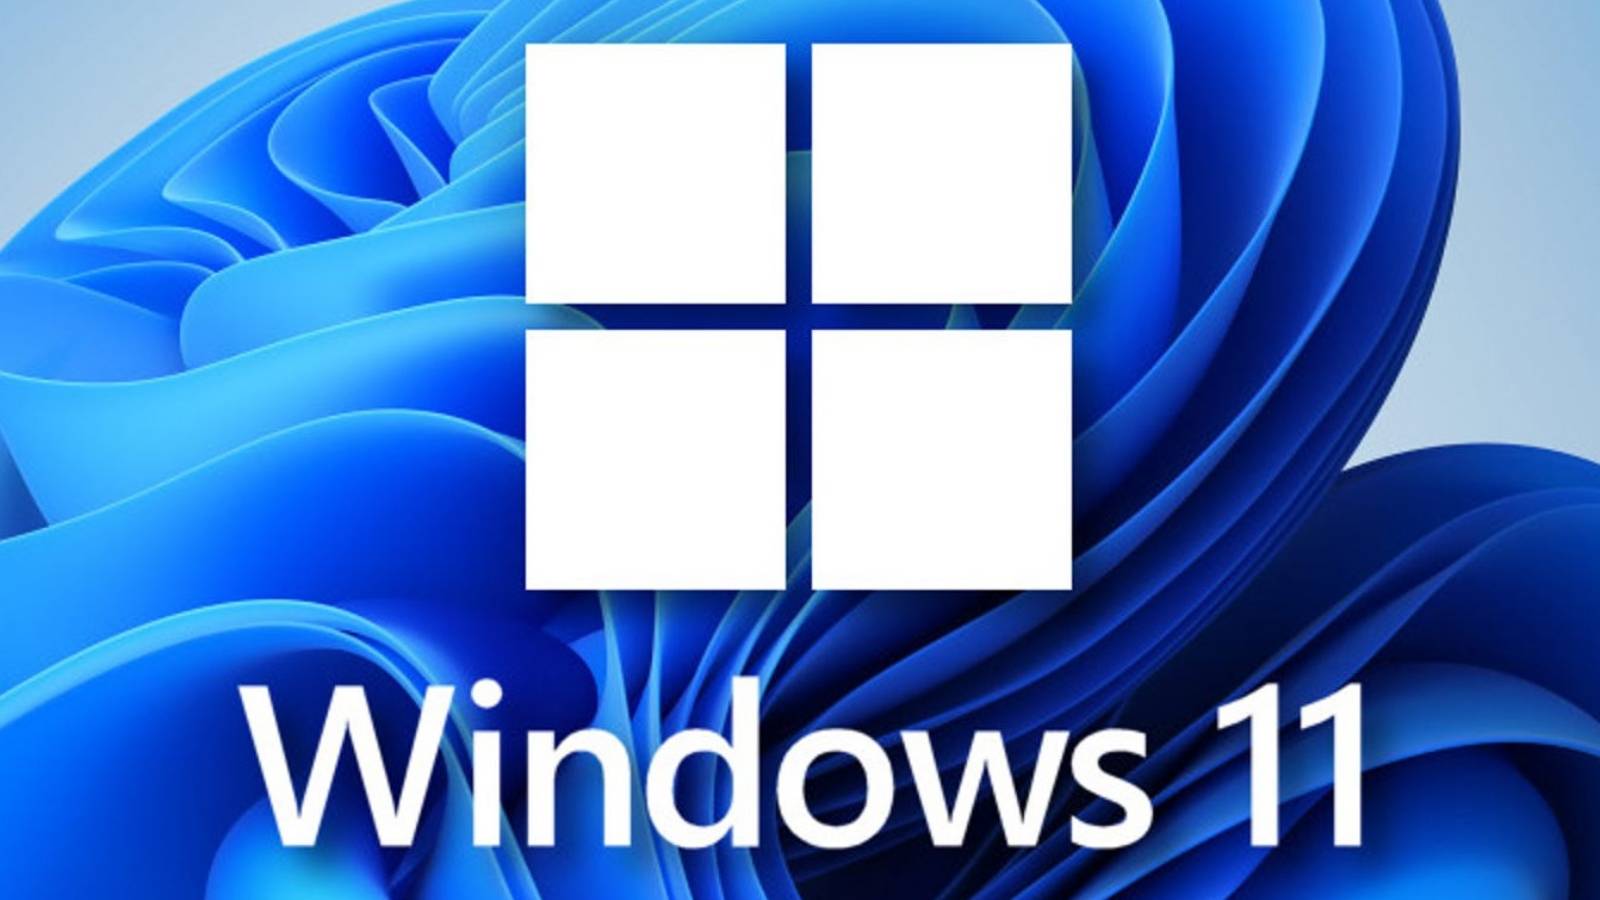 Microsoft wprowadza serię nowych zmian w systemie Windows 11 na całym świecie